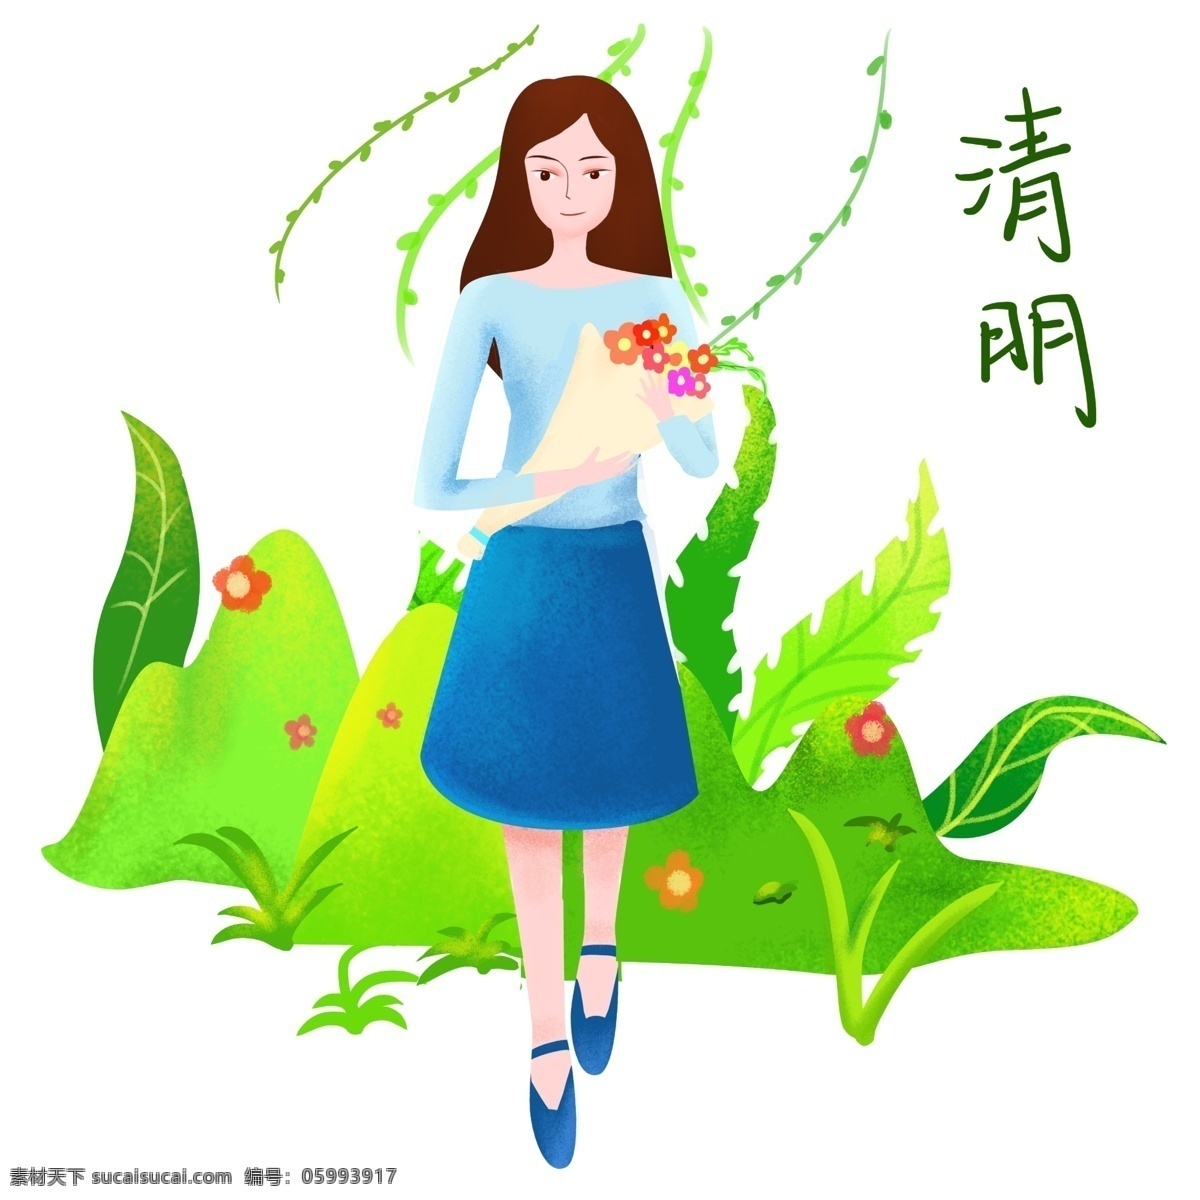 清明节 花束 女孩 插画 一束鲜花 节日 祭拜的女孩 绿色植物装饰 绿叶装饰